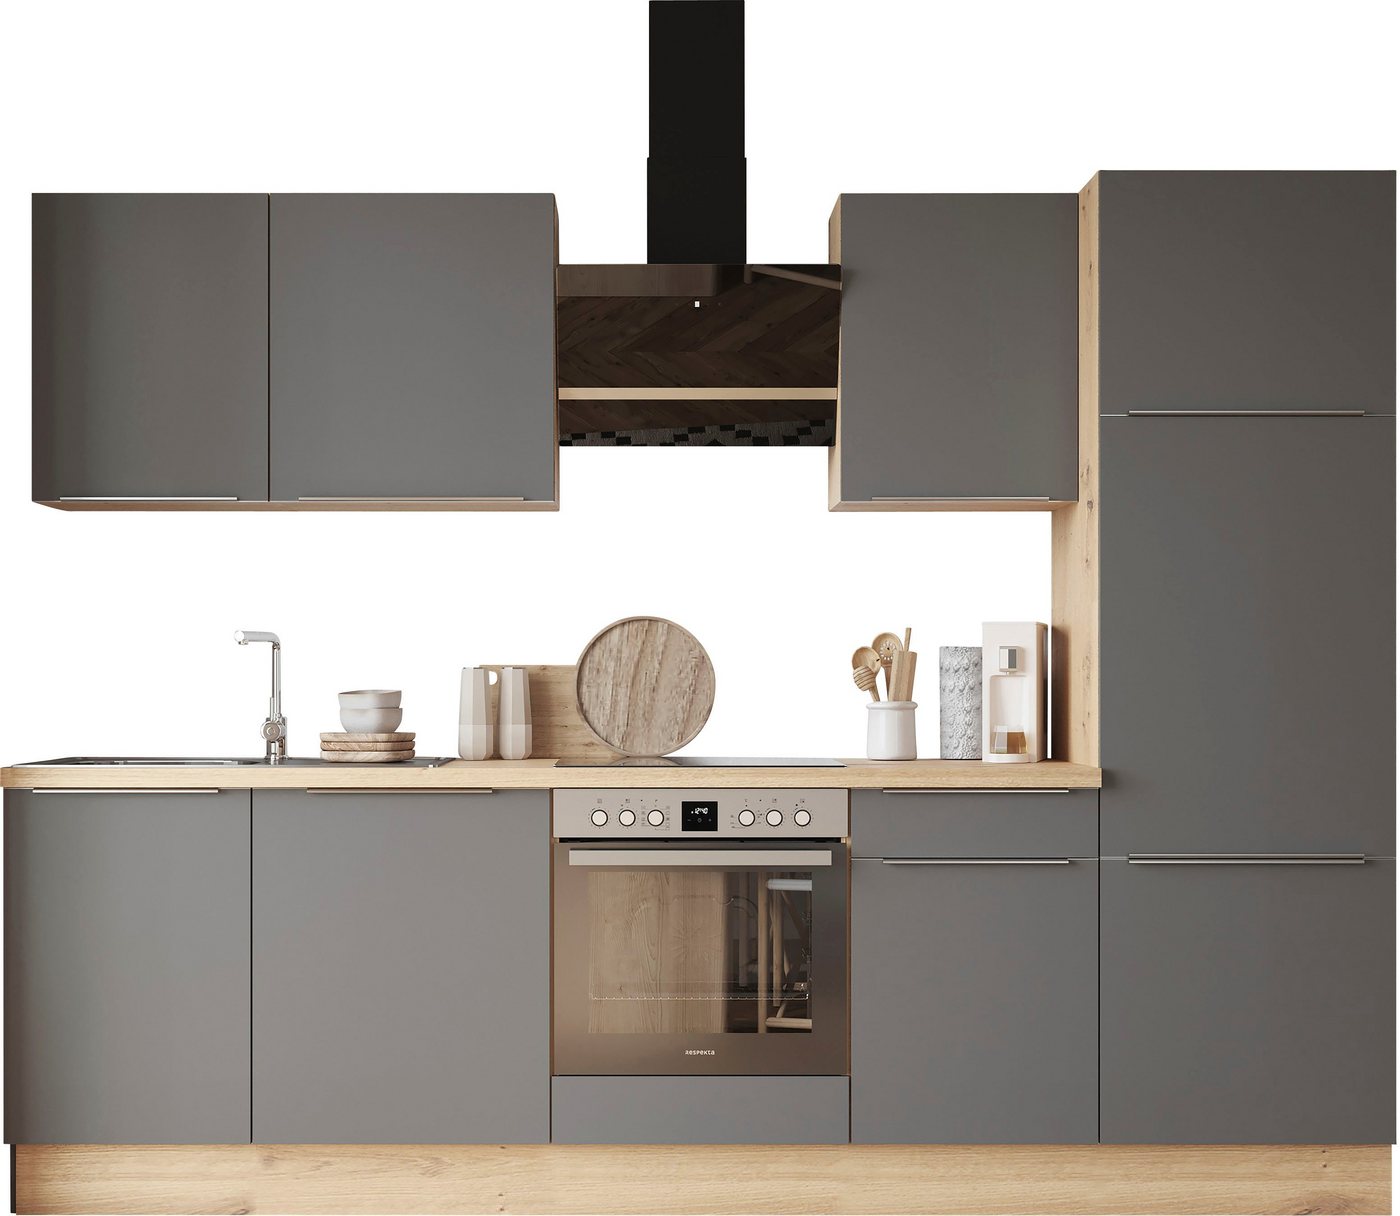 RESPEKTA Küchenzeile Safado aus der Serie Marleen, Breite 280 cm, hochwertige Ausstattung wie Soft Close Funktion von RESPEKTA